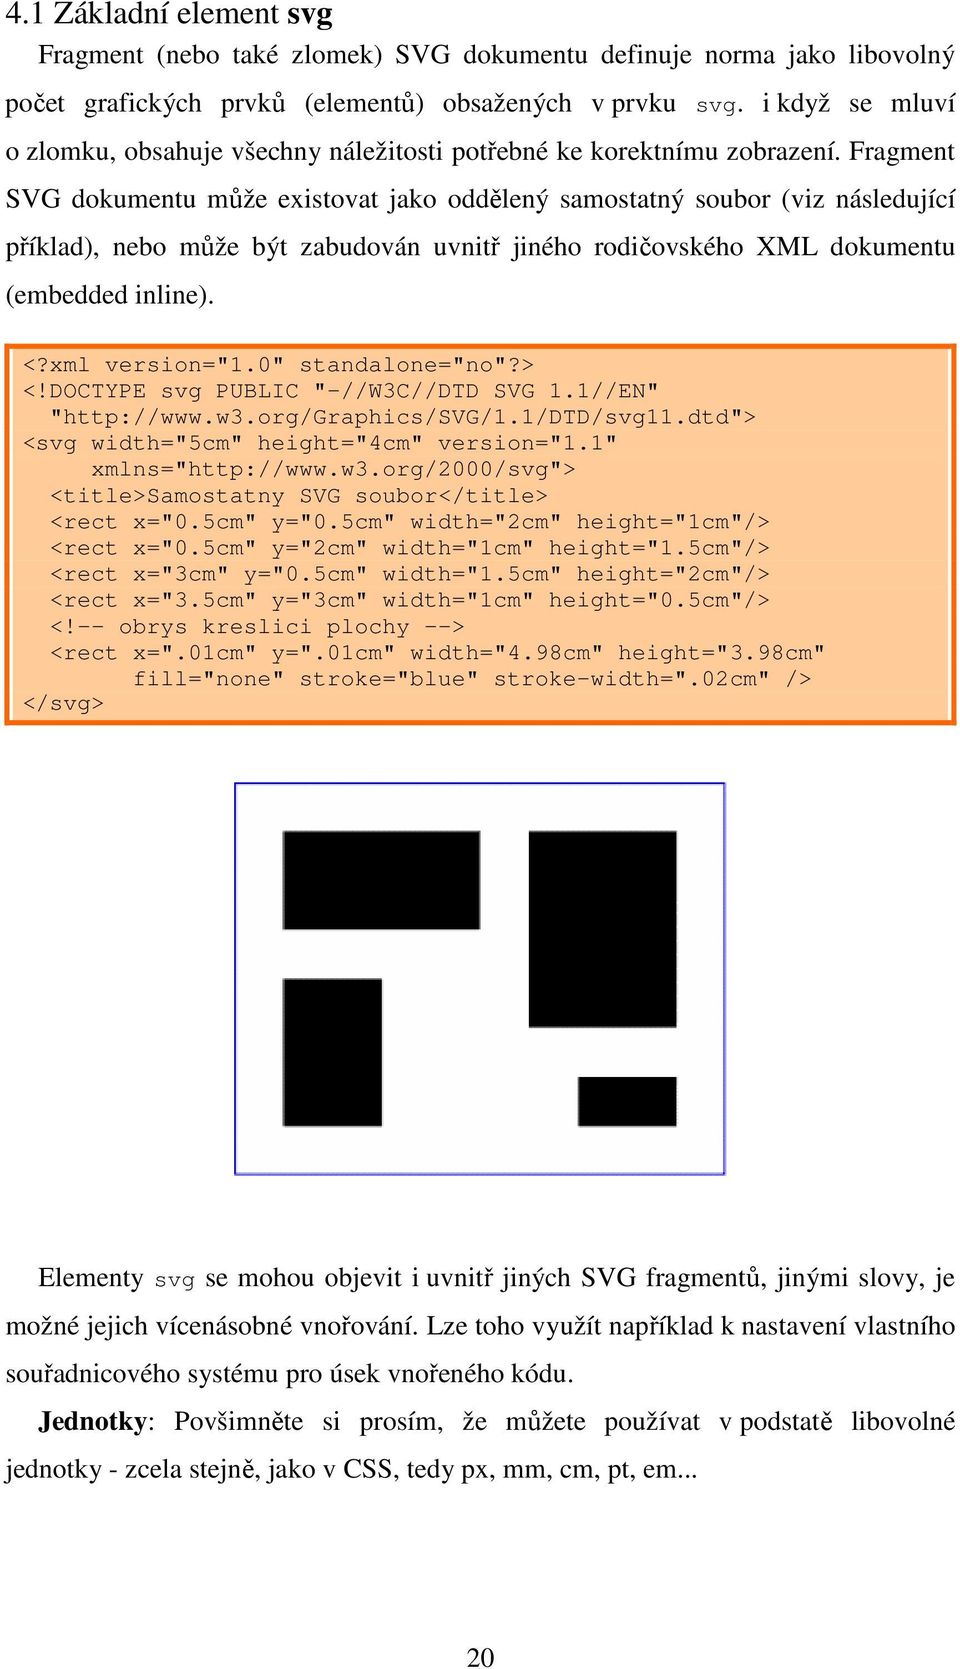 Fragment SVG dokumentu může existovat jako oddělený samostatný soubor (viz následující příklad), nebo může být zabudován uvnitř jiného rodičovského XML dokumentu (embedded inline). <?xml version="1.